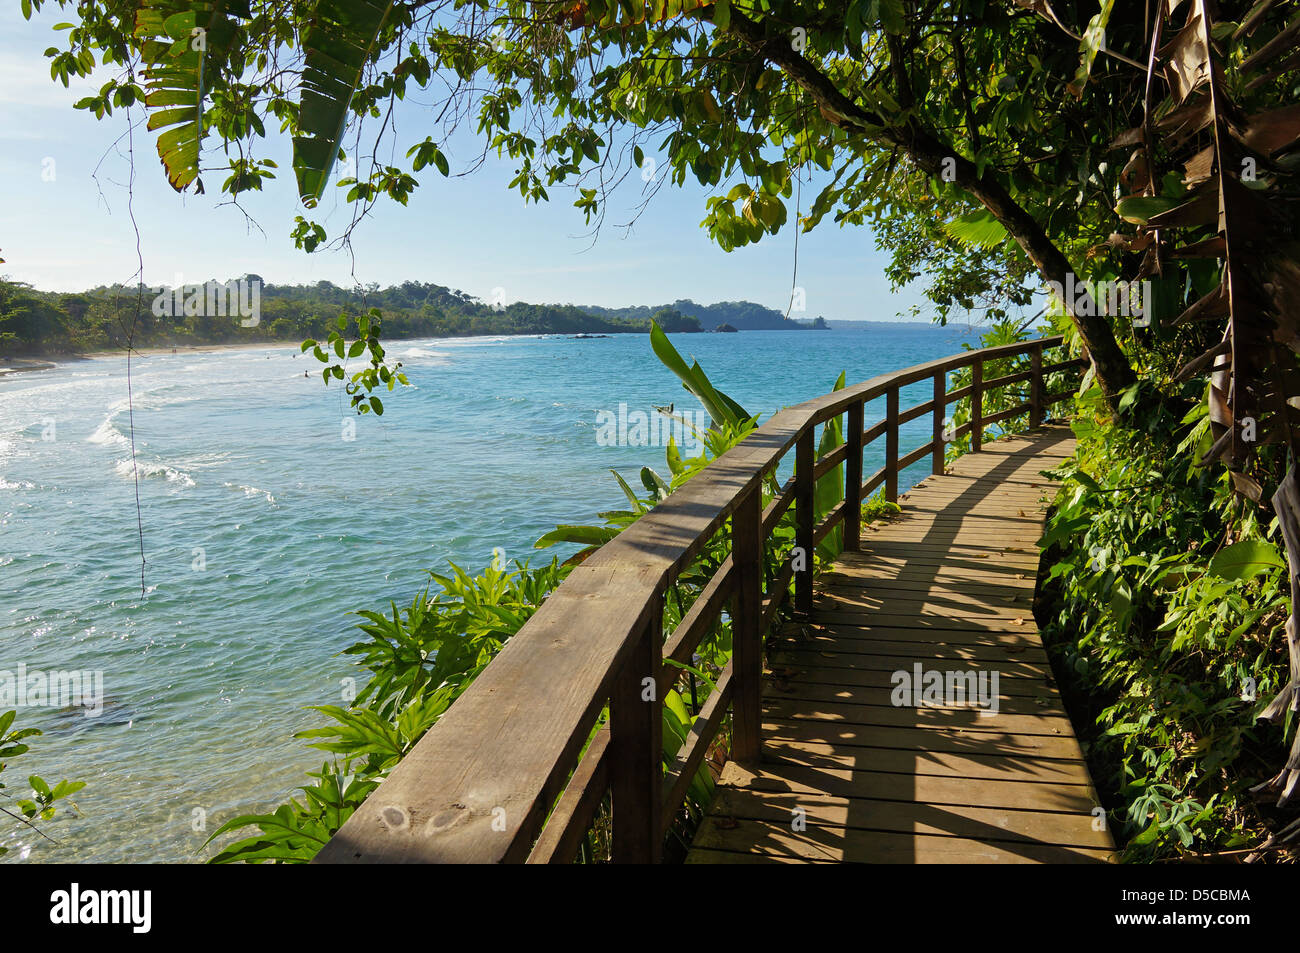 Il Footbridge con vegetazione lussureggiante lungo la costa in un isola dei Caraibi Foto Stock